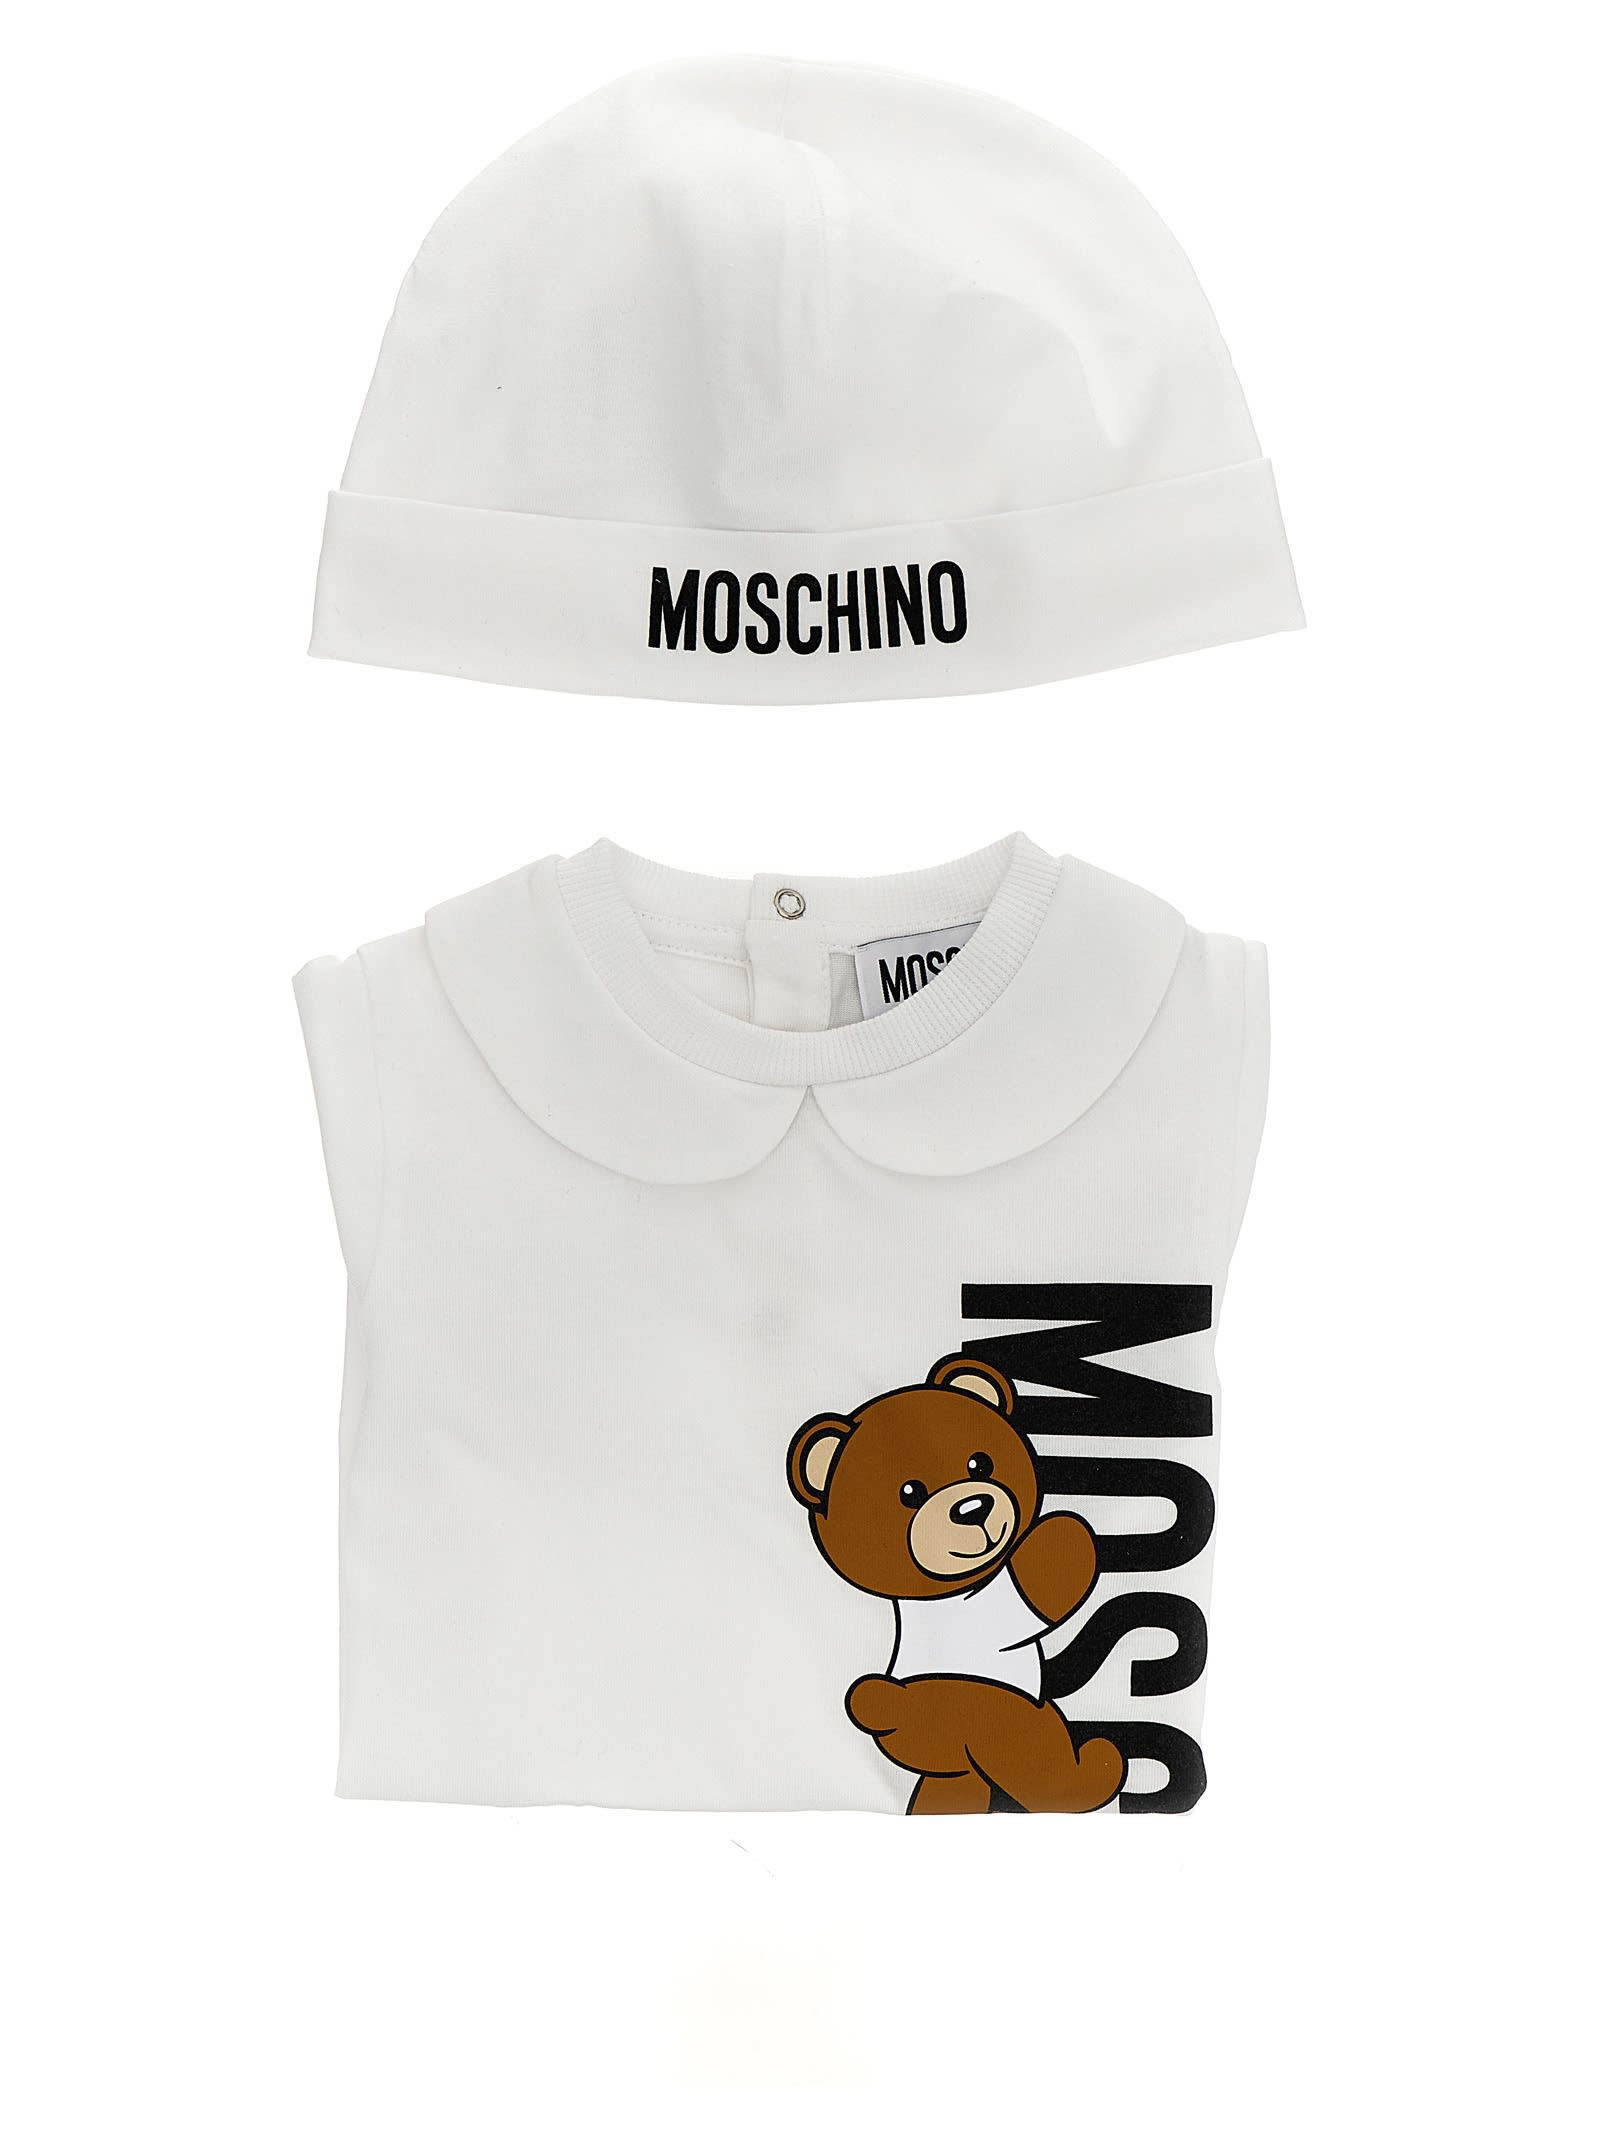 Moschino Babies' Bib + Cap In White